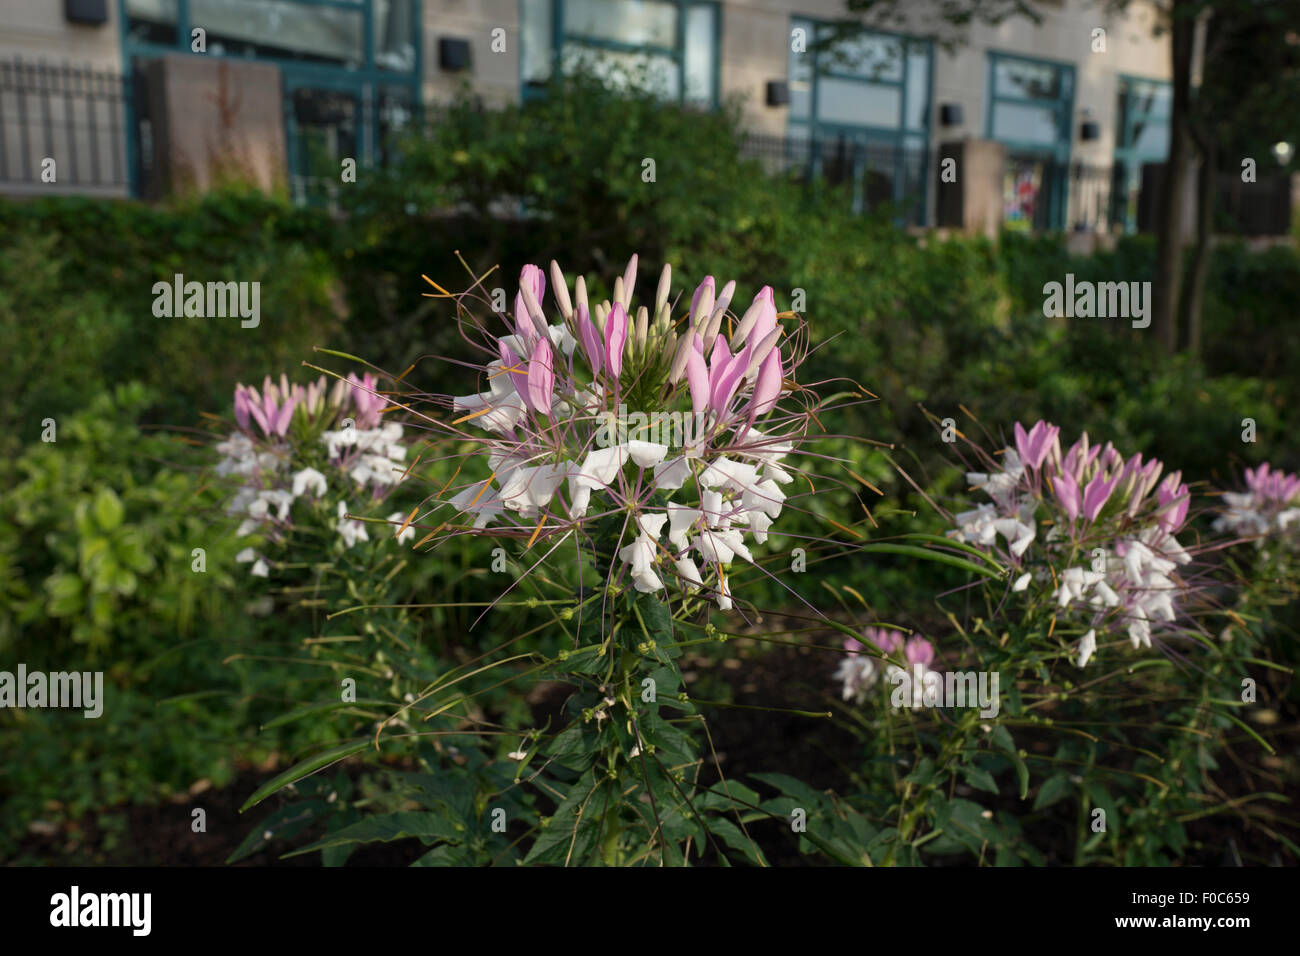 Cleome hassleriana, comunemente noto come spider flower, spider impianto o rosa regina, crescendo in Battery Park City, la città di New York. Foto Stock